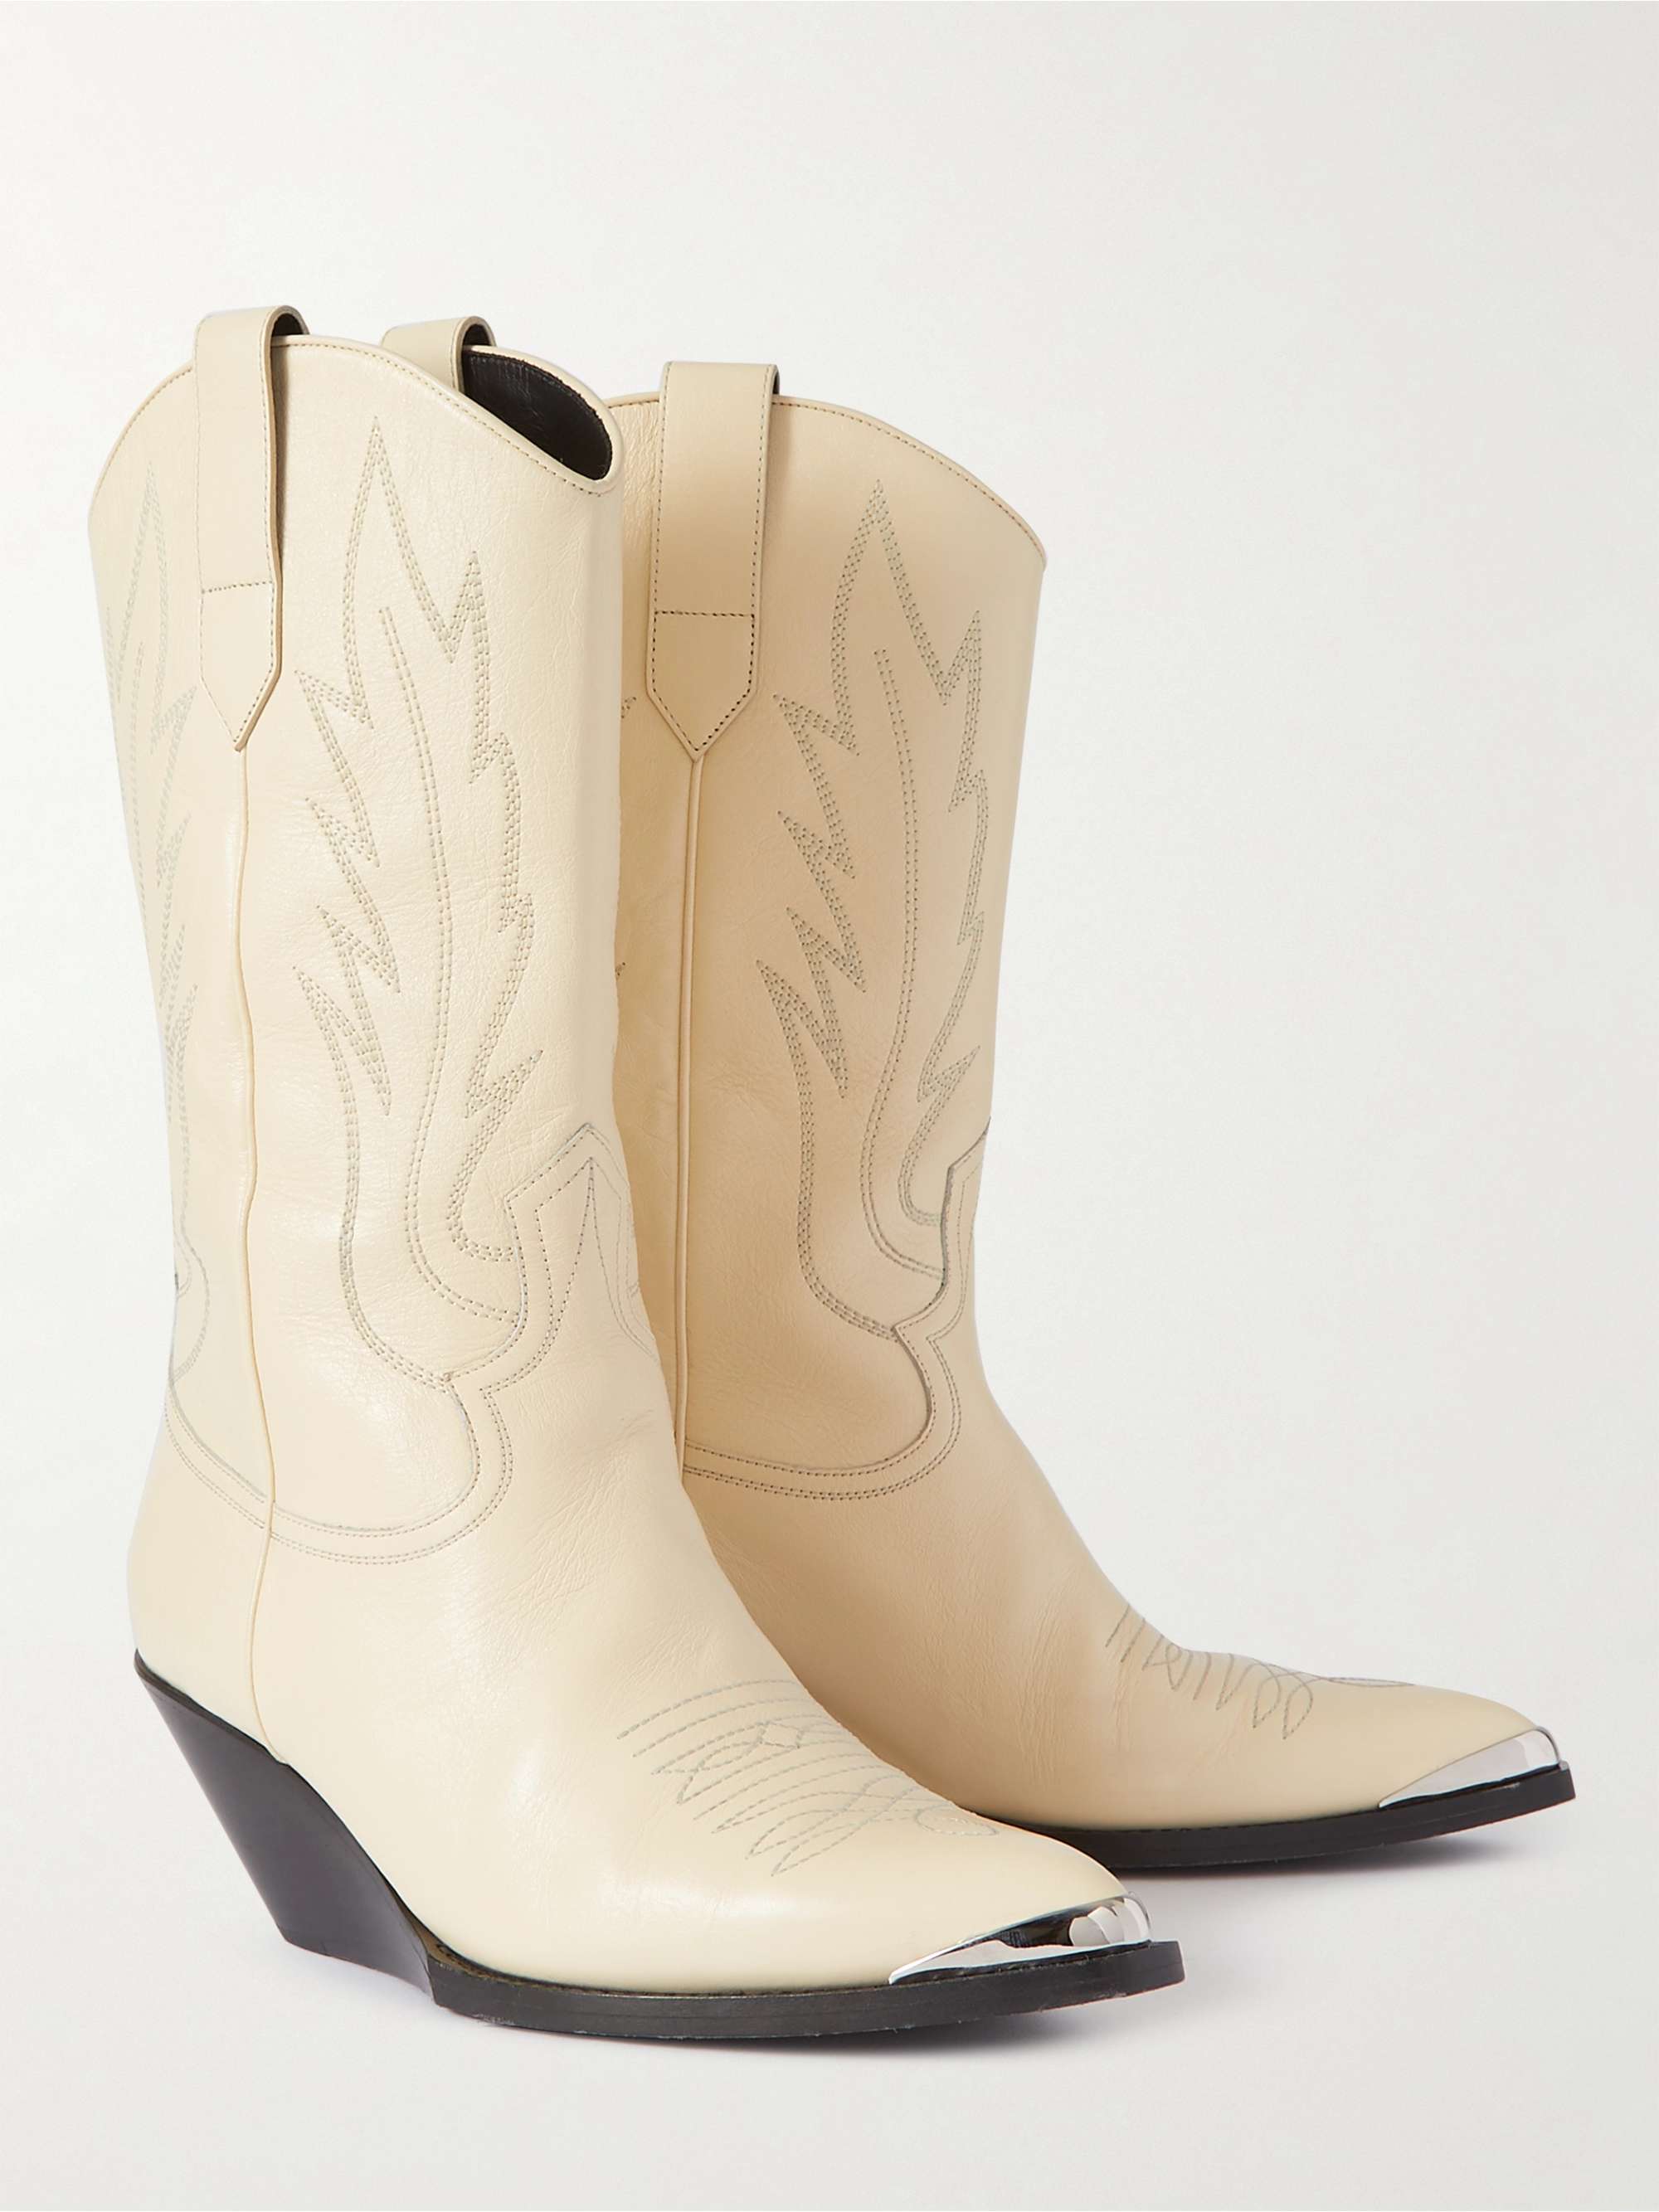 Cream Embellished Leather Boots | CELINE HOMME | MR PORTER